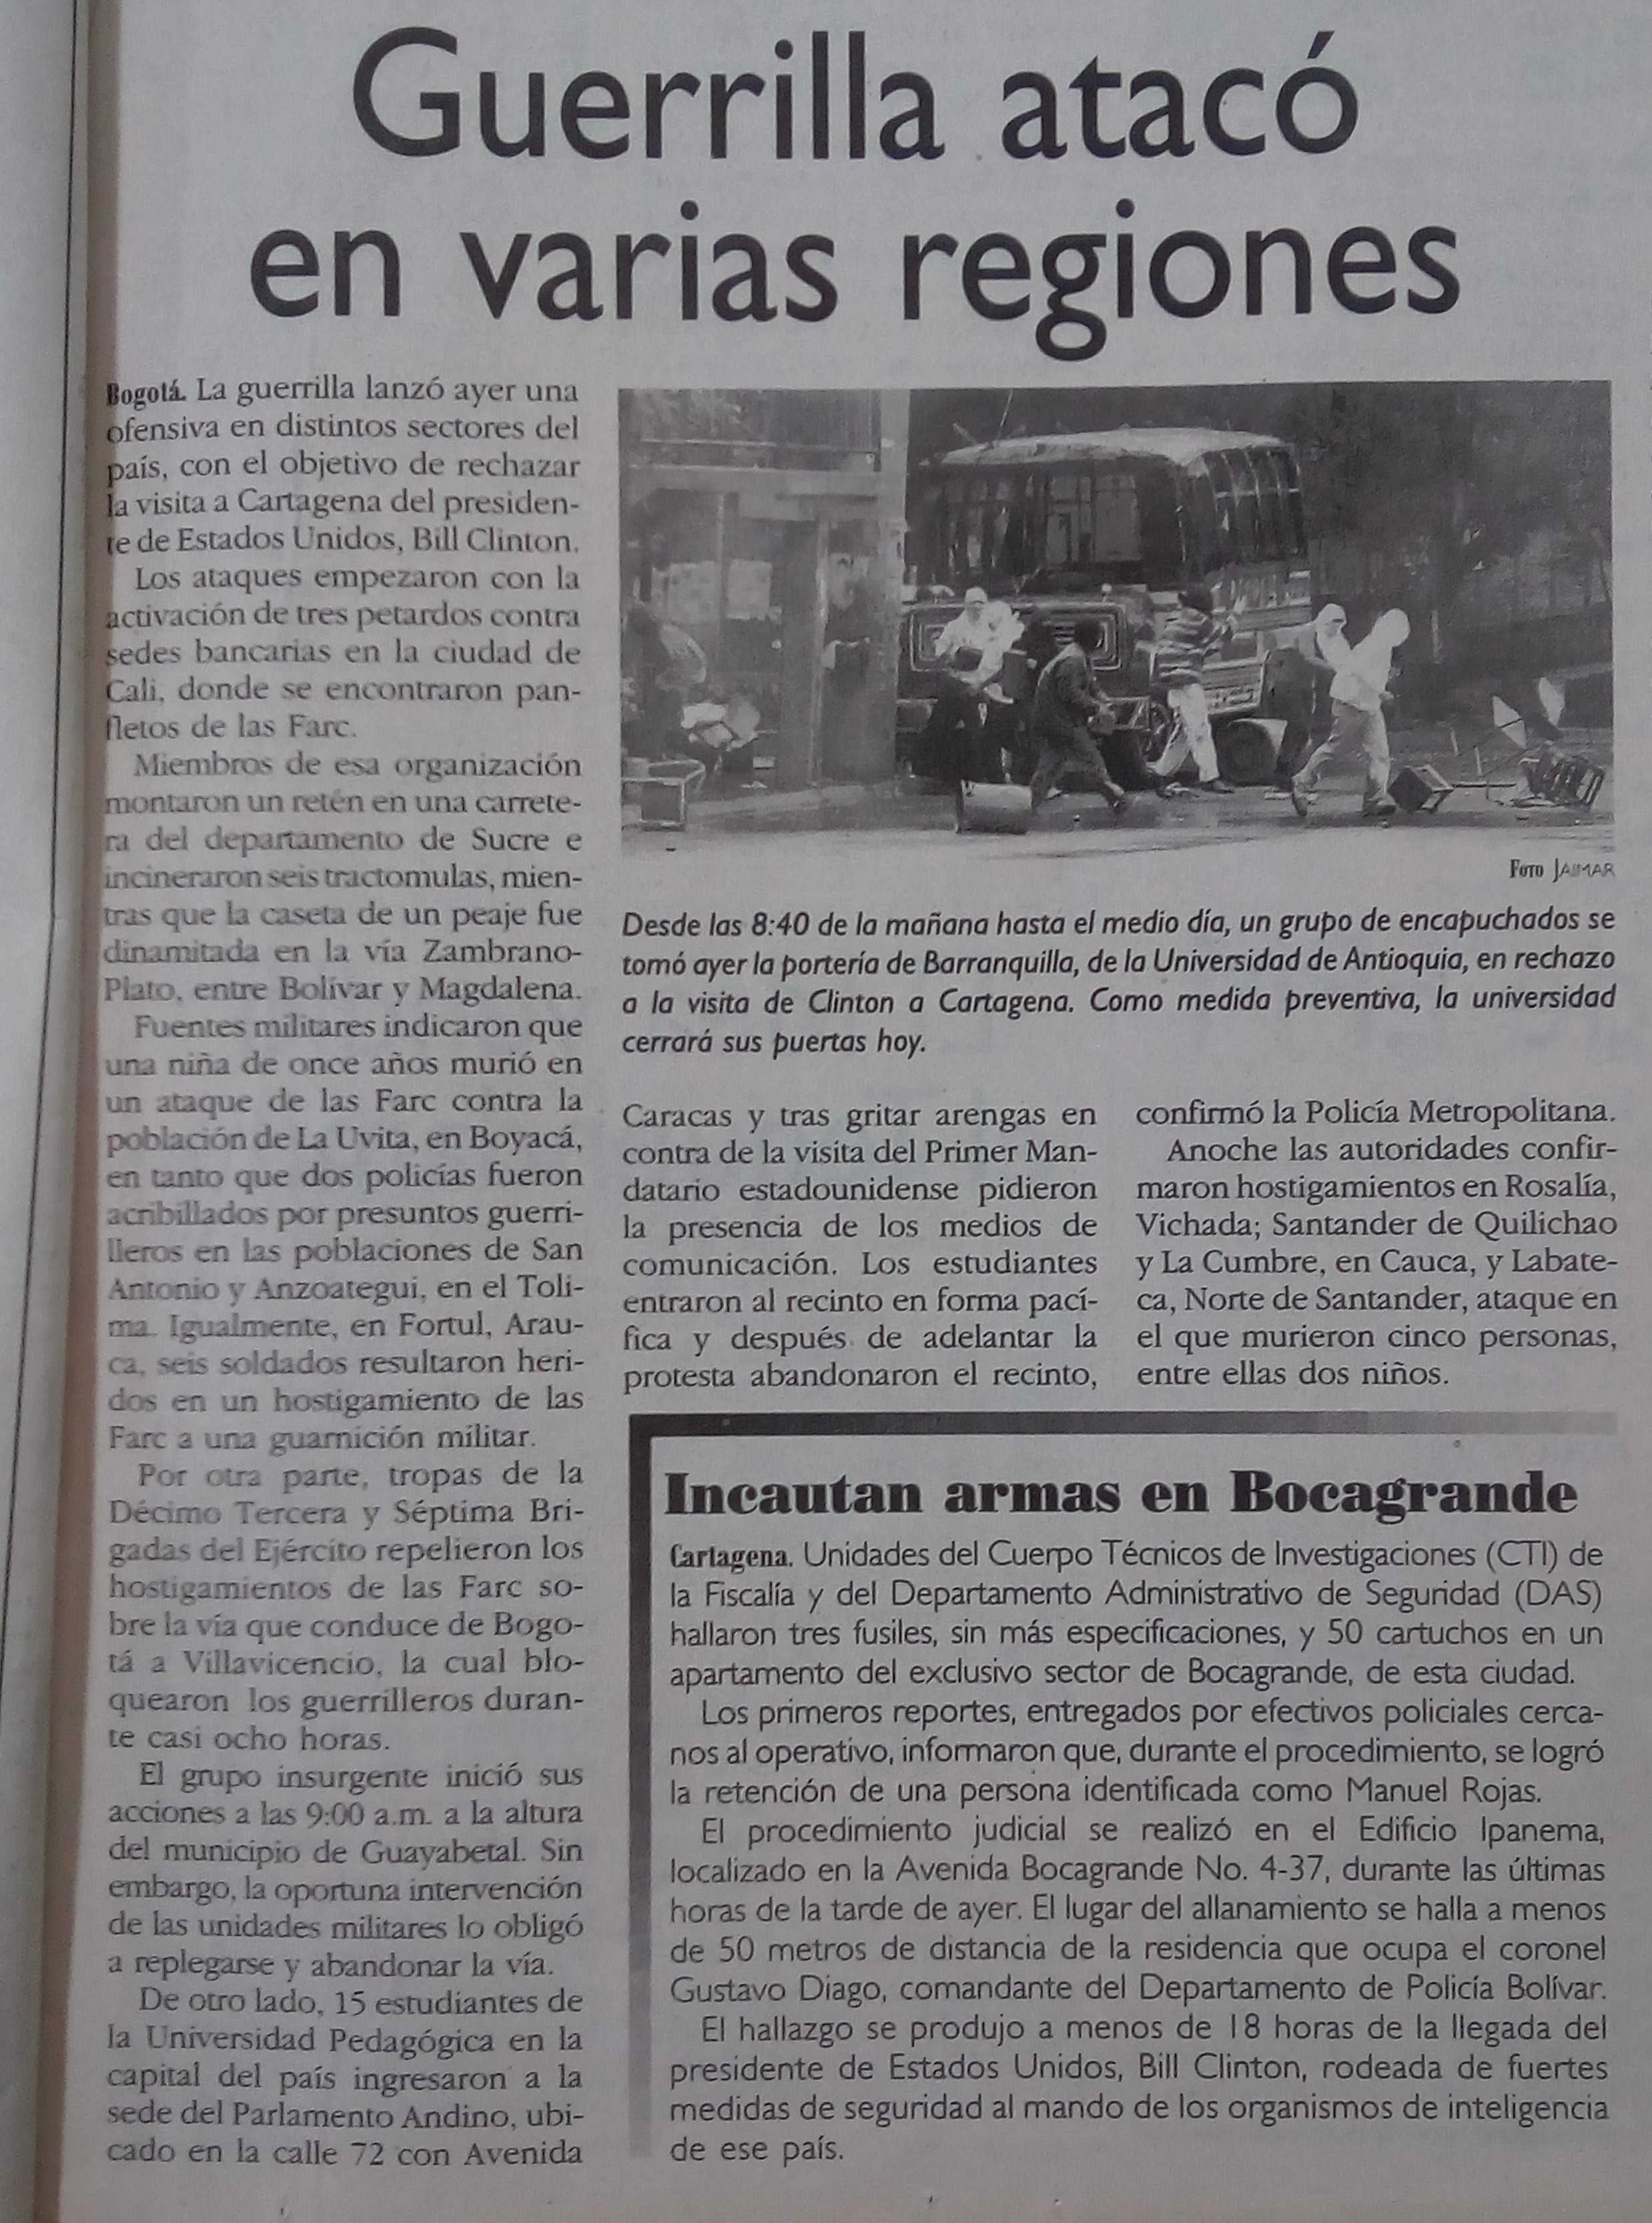 Fotografía tomada de la edición del 30 de agosto del 2000 del periódico El Colombiano.